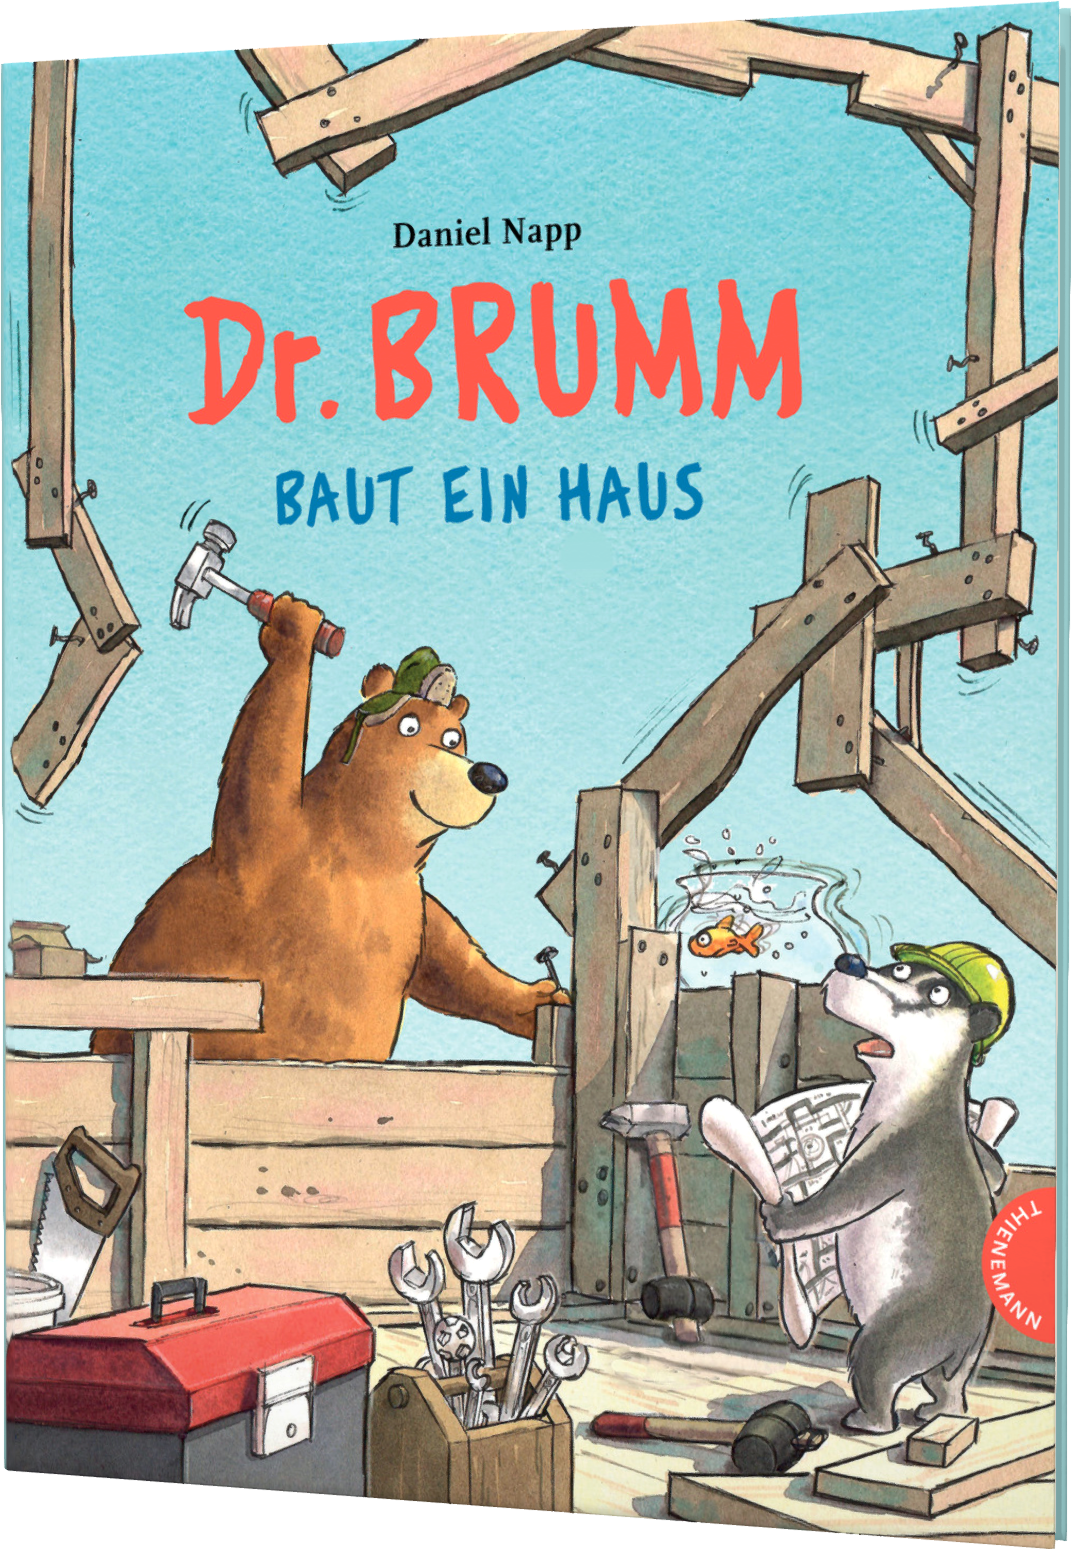 {#dr-brumm-dr-brumm-baut-ein-haus-isbn-978-3-522-46020-0}